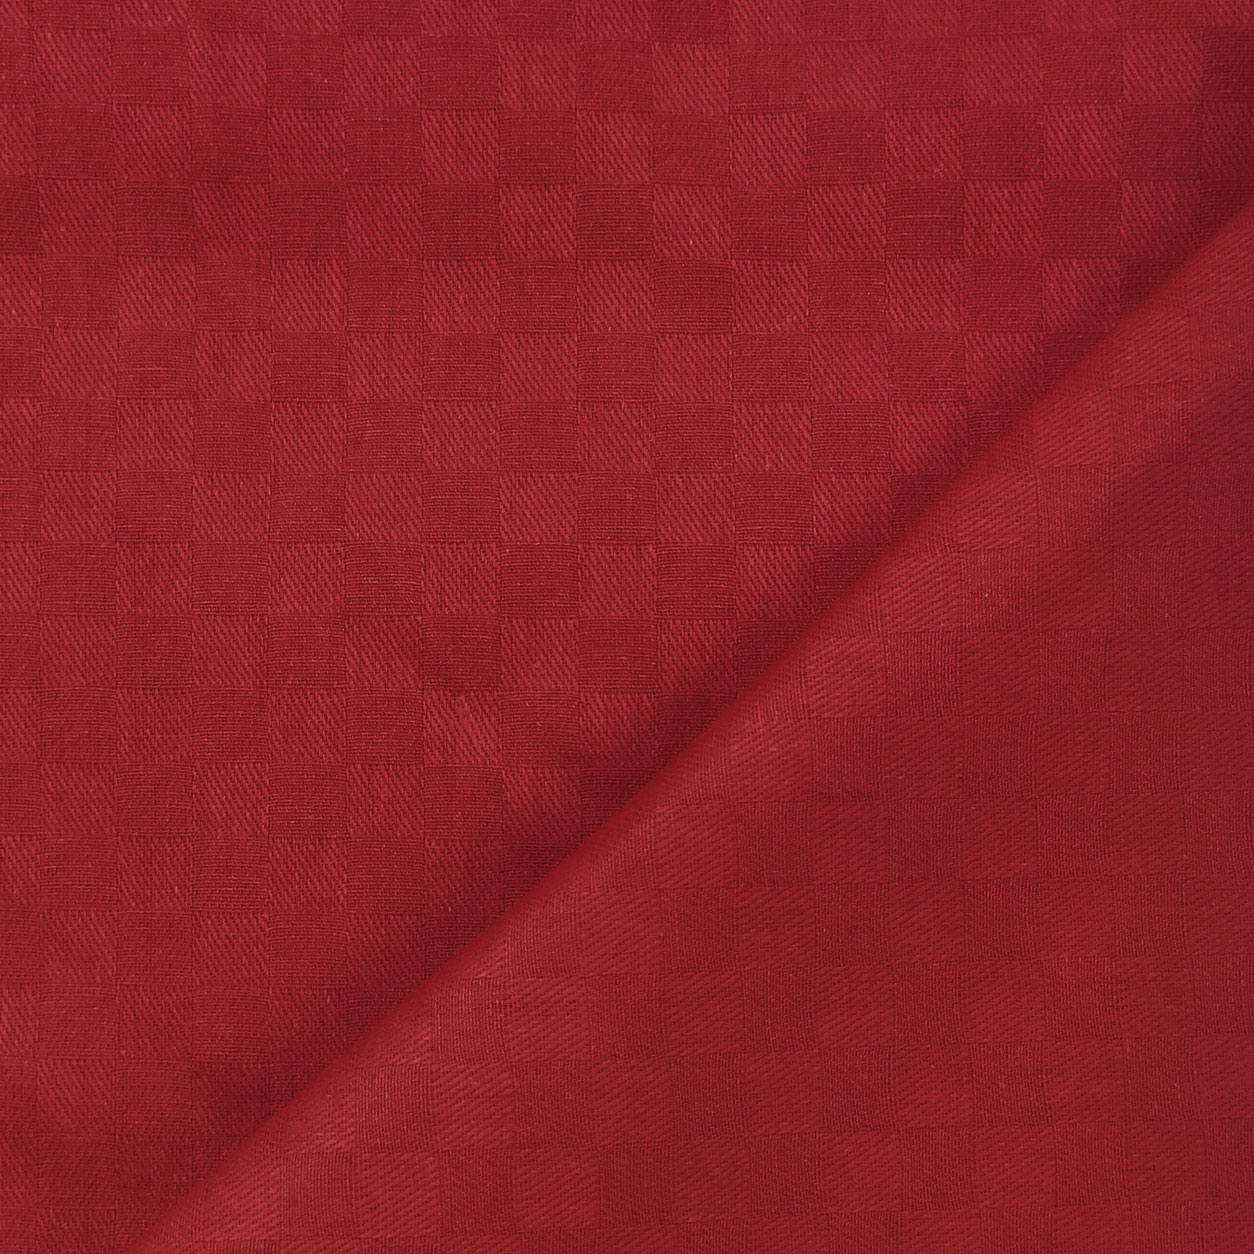 tessuto-tinto-in-filo-tovaglia-rosso